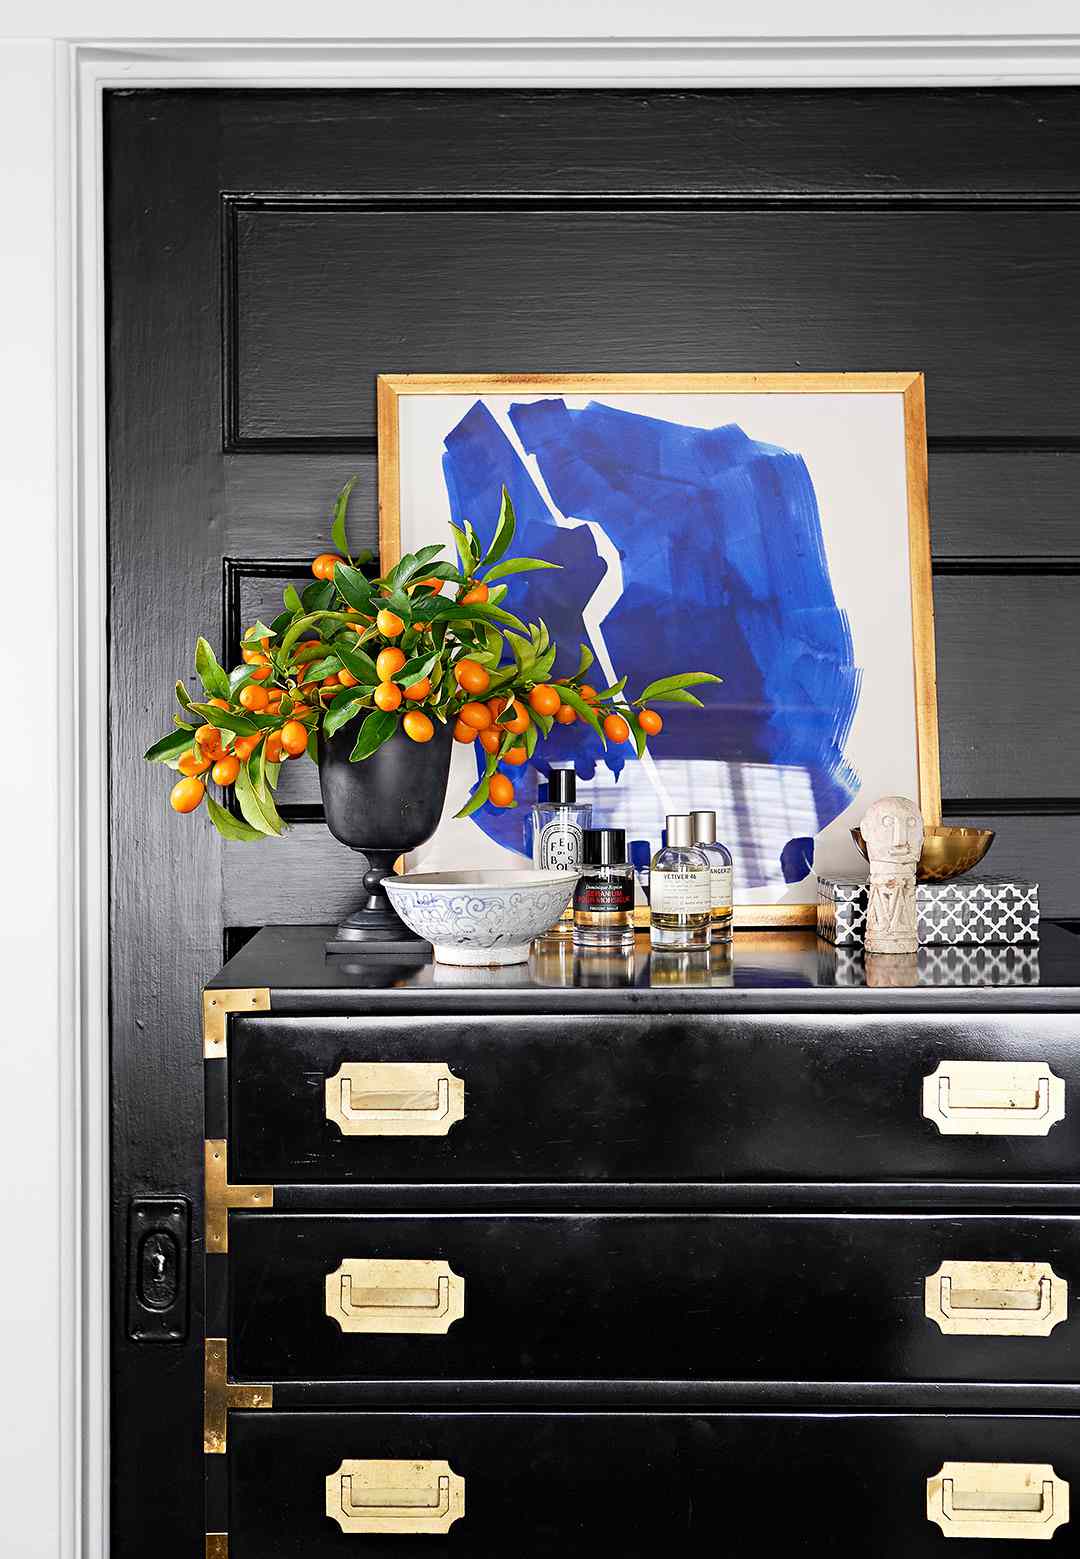 black dresser with gold hardware and dresser-top display of art, cologne bottles